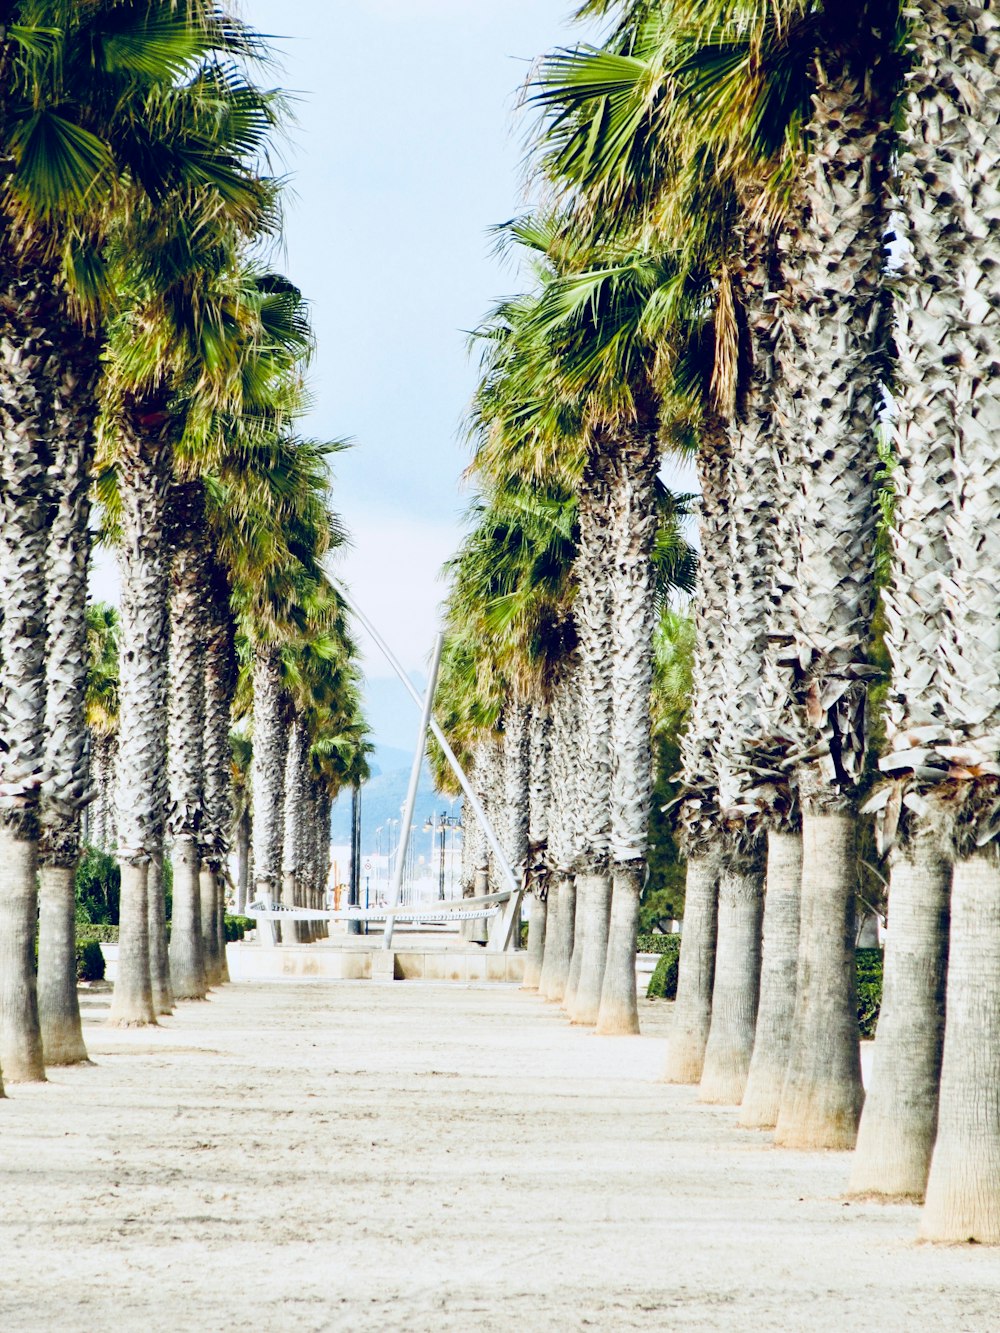 a row of palm trees on a beach